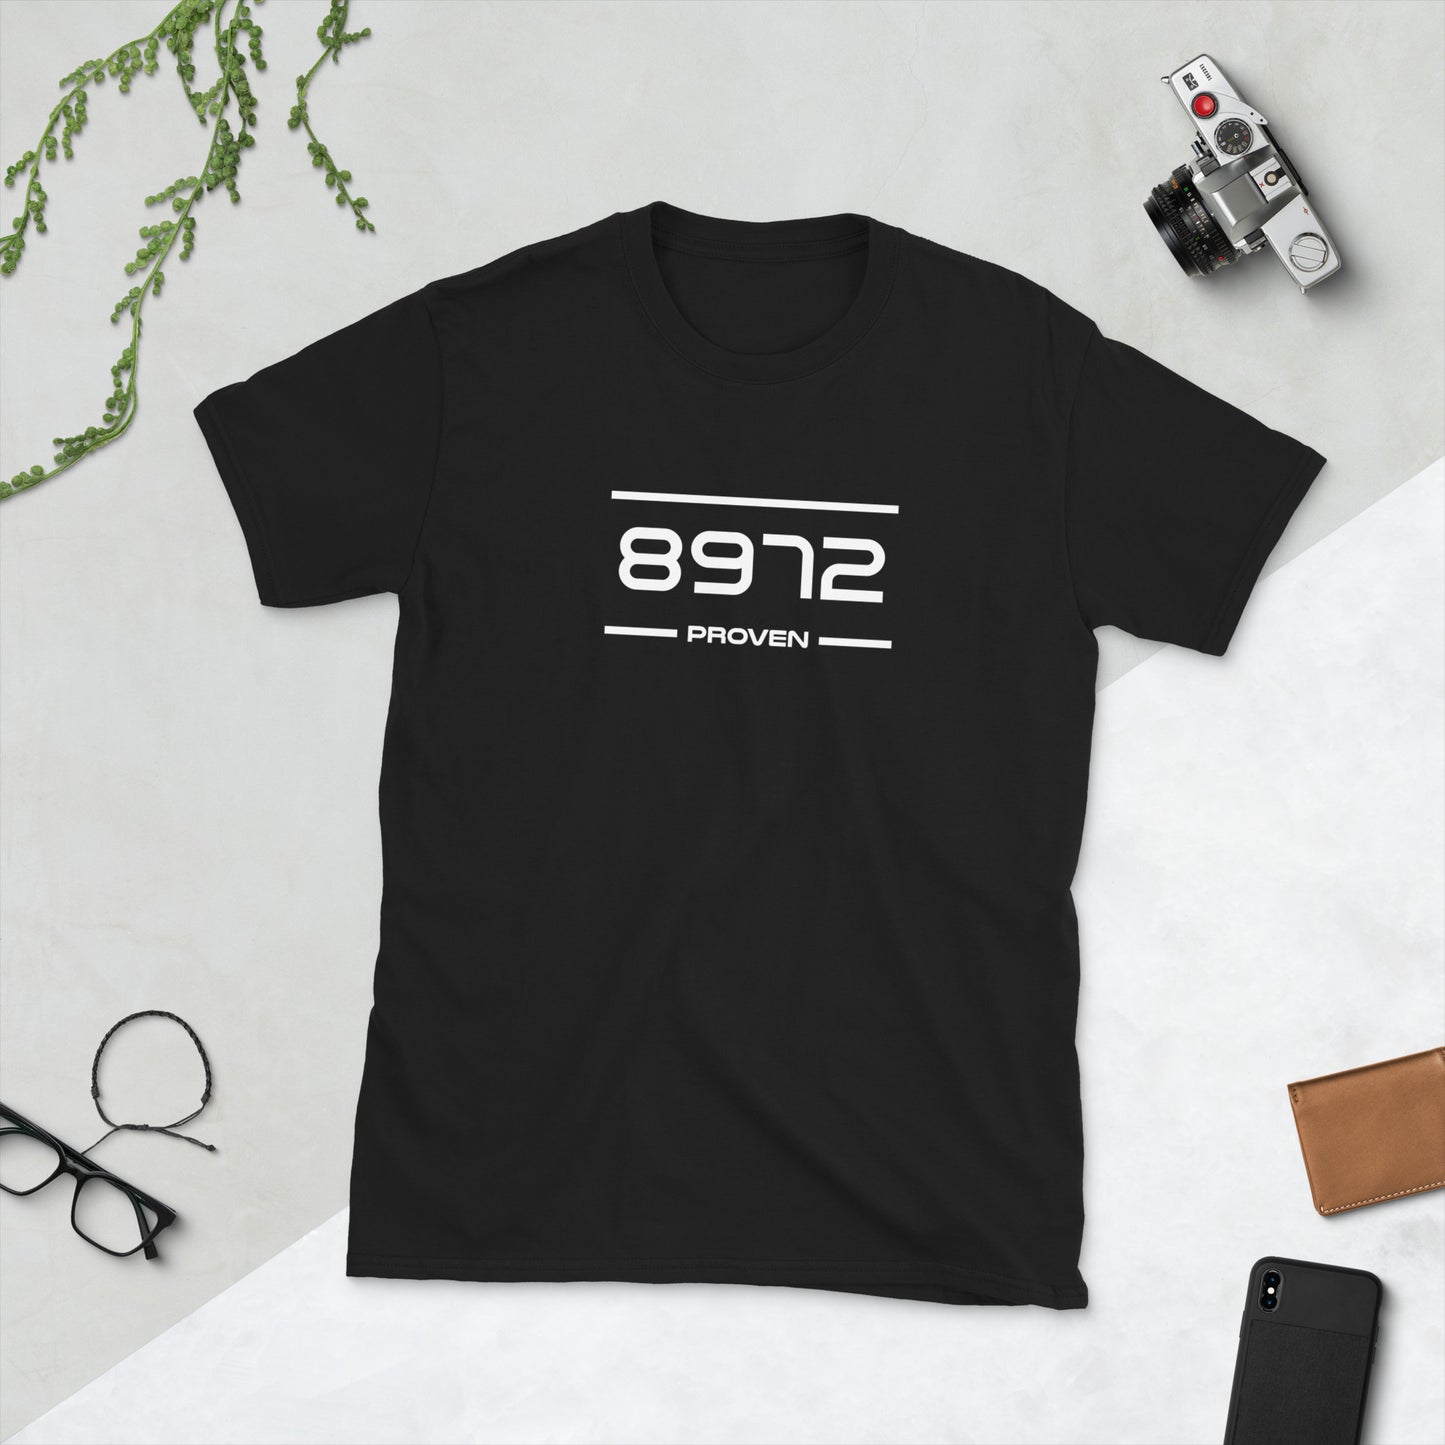 Tshirt - 8972 - Proven